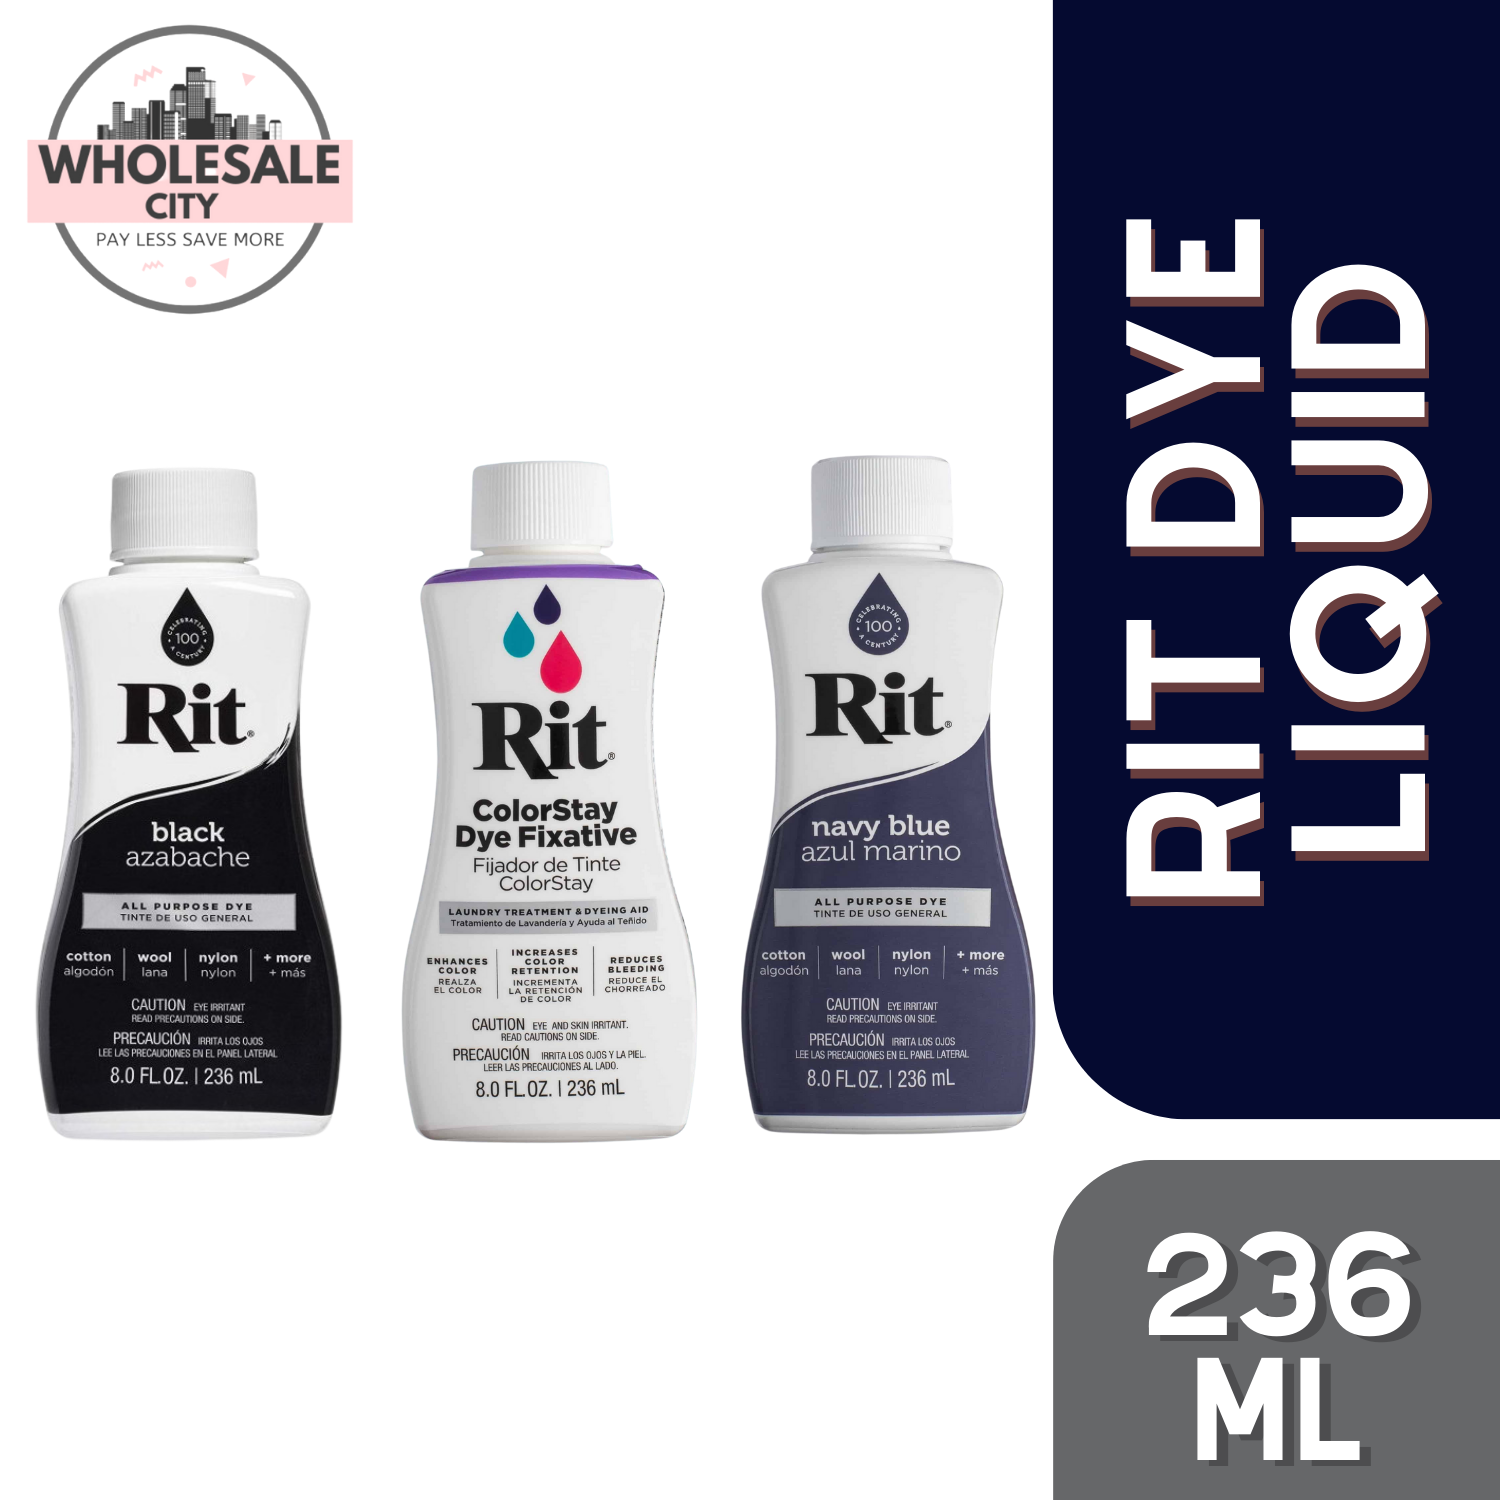 Rit, Black Purpose Powder Dye, 1-1/8 oz